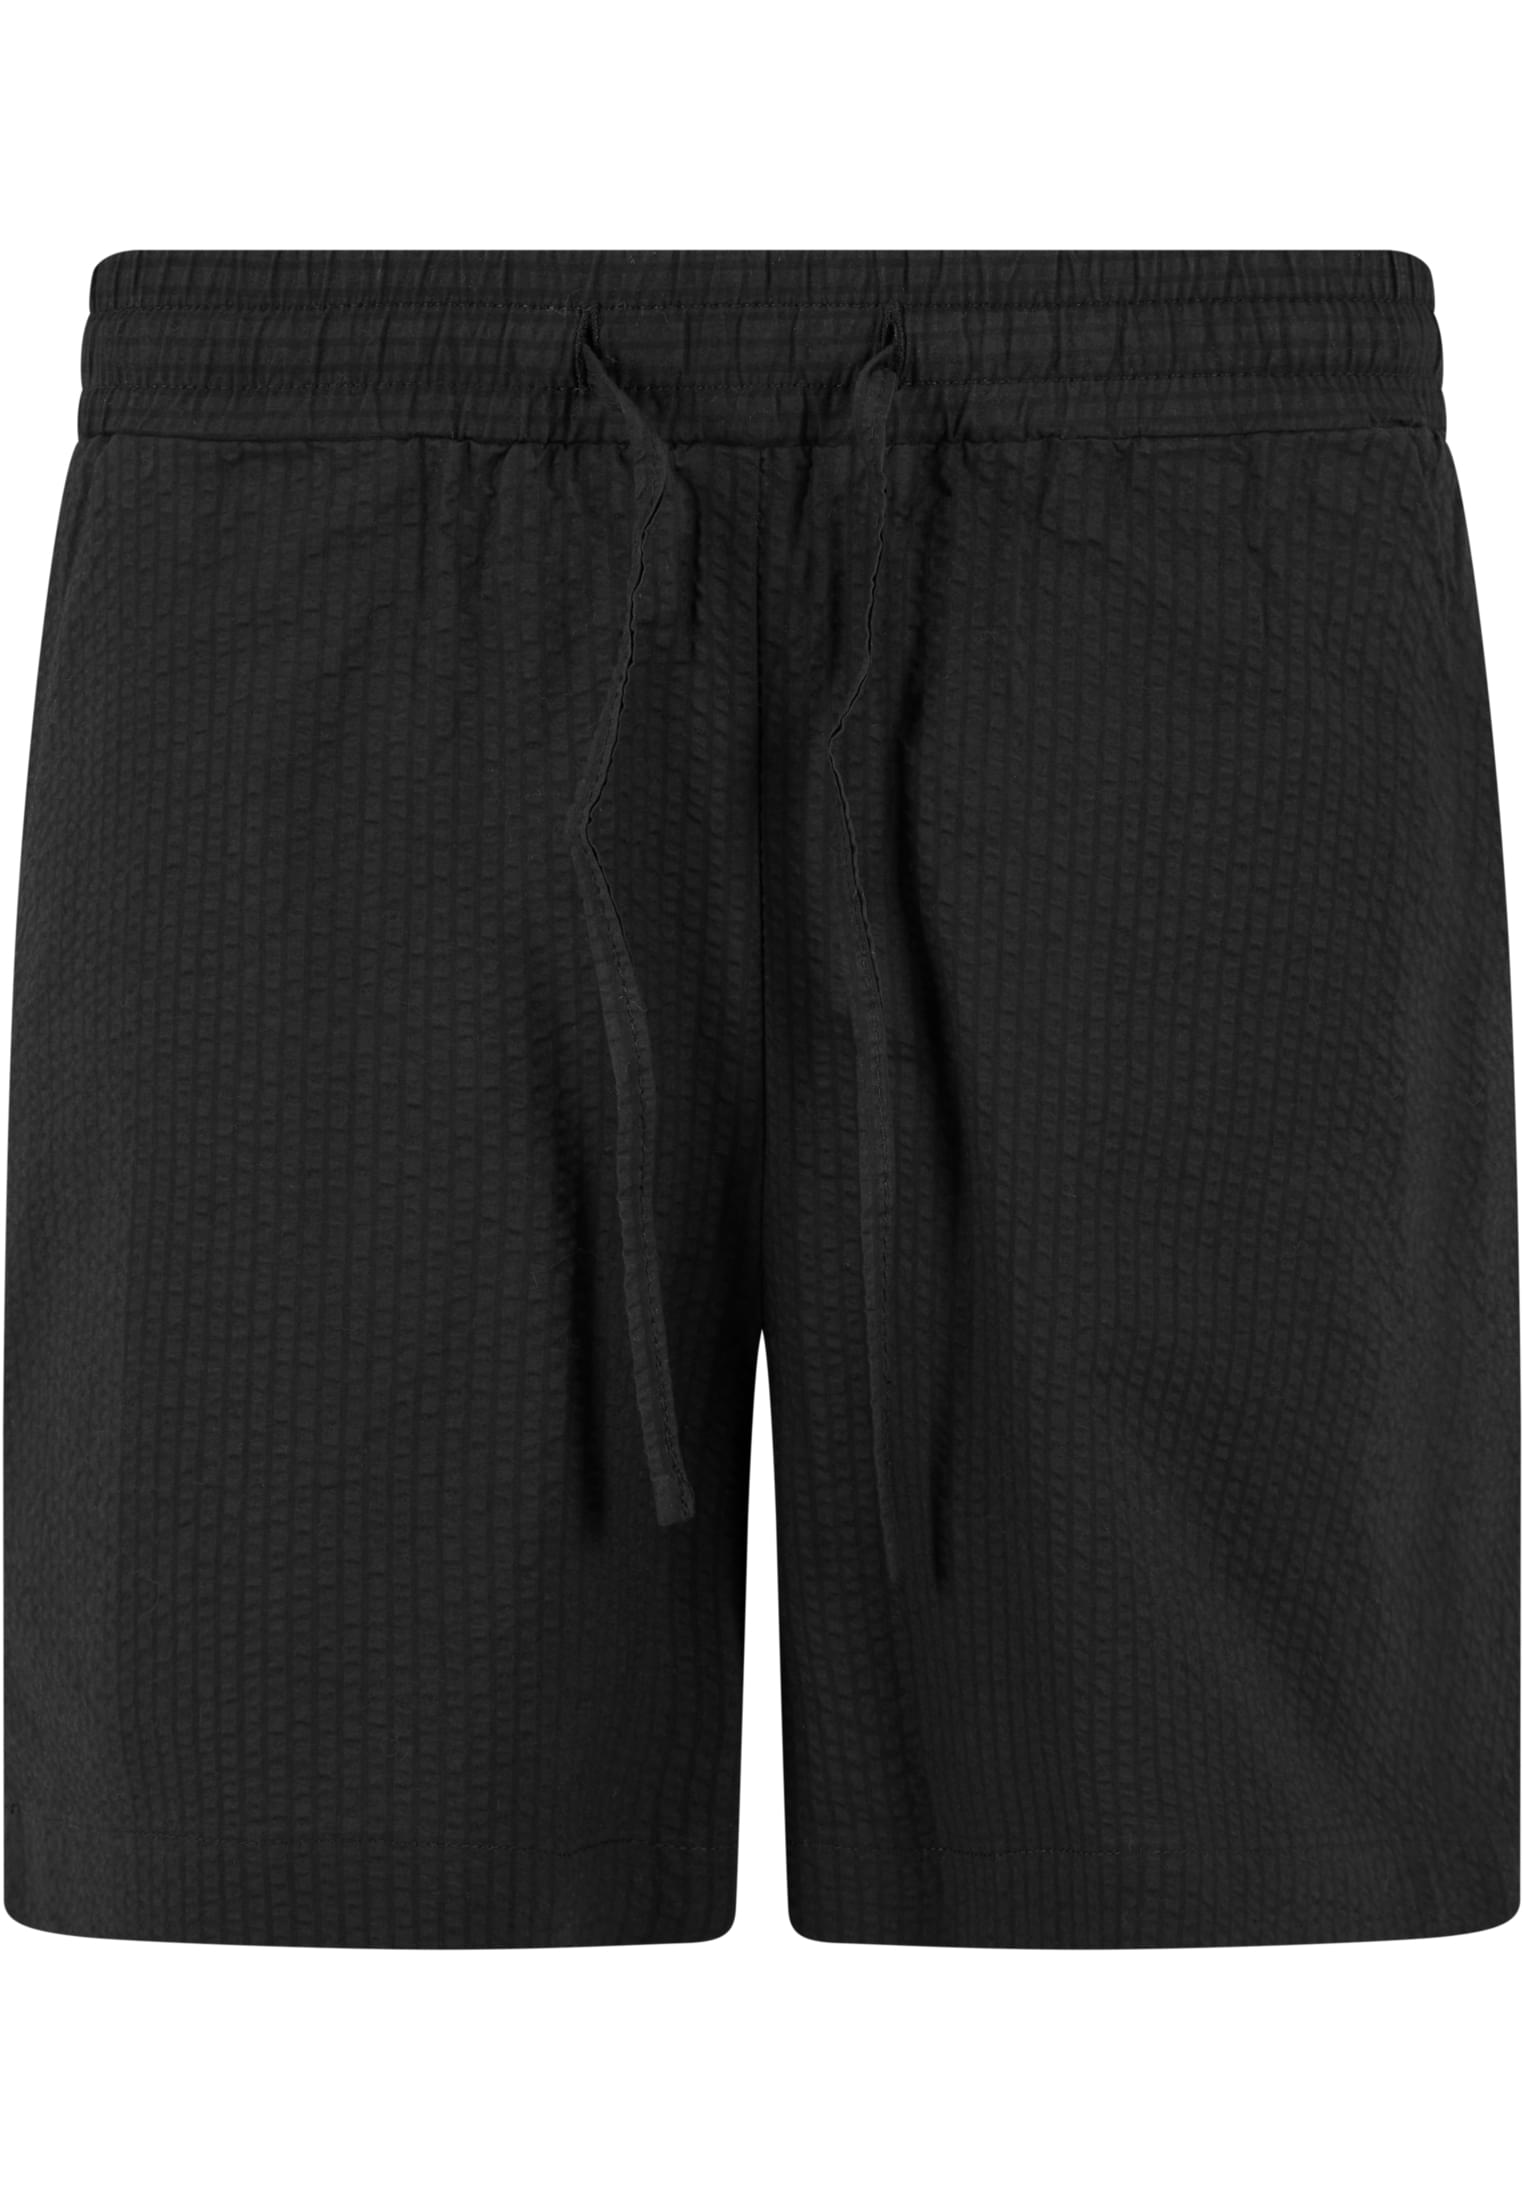 Women's Seersucker Shorts - Black